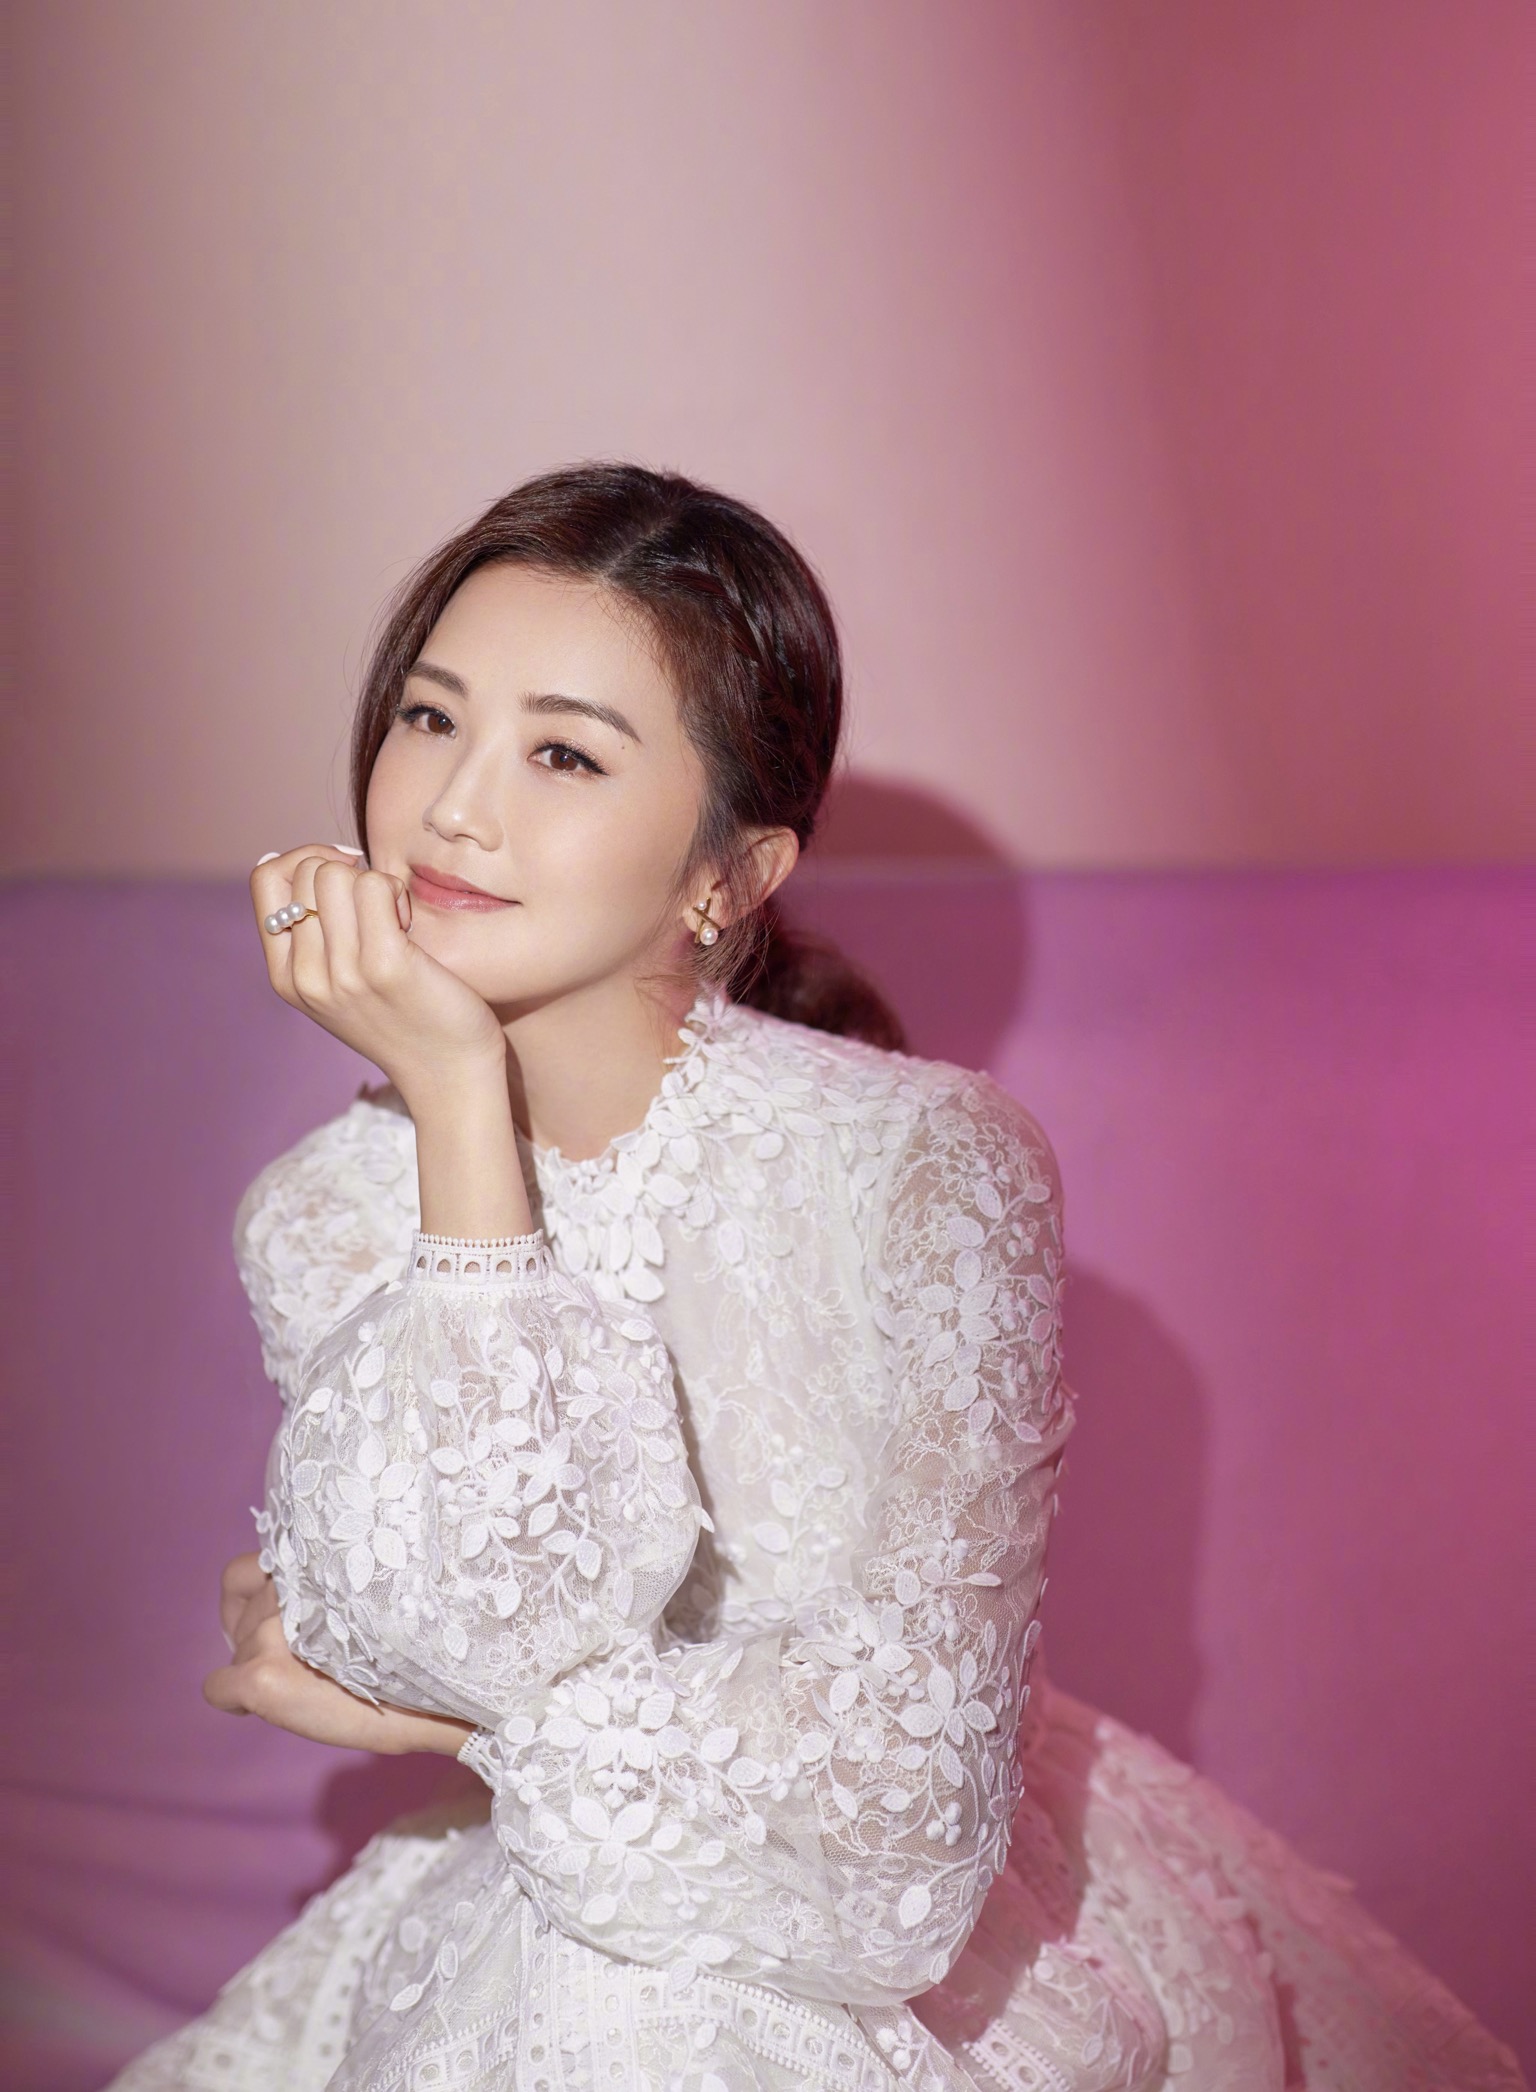 Asian Women Celebrity Actress Twins Zhuoyan Cai 1536x2092